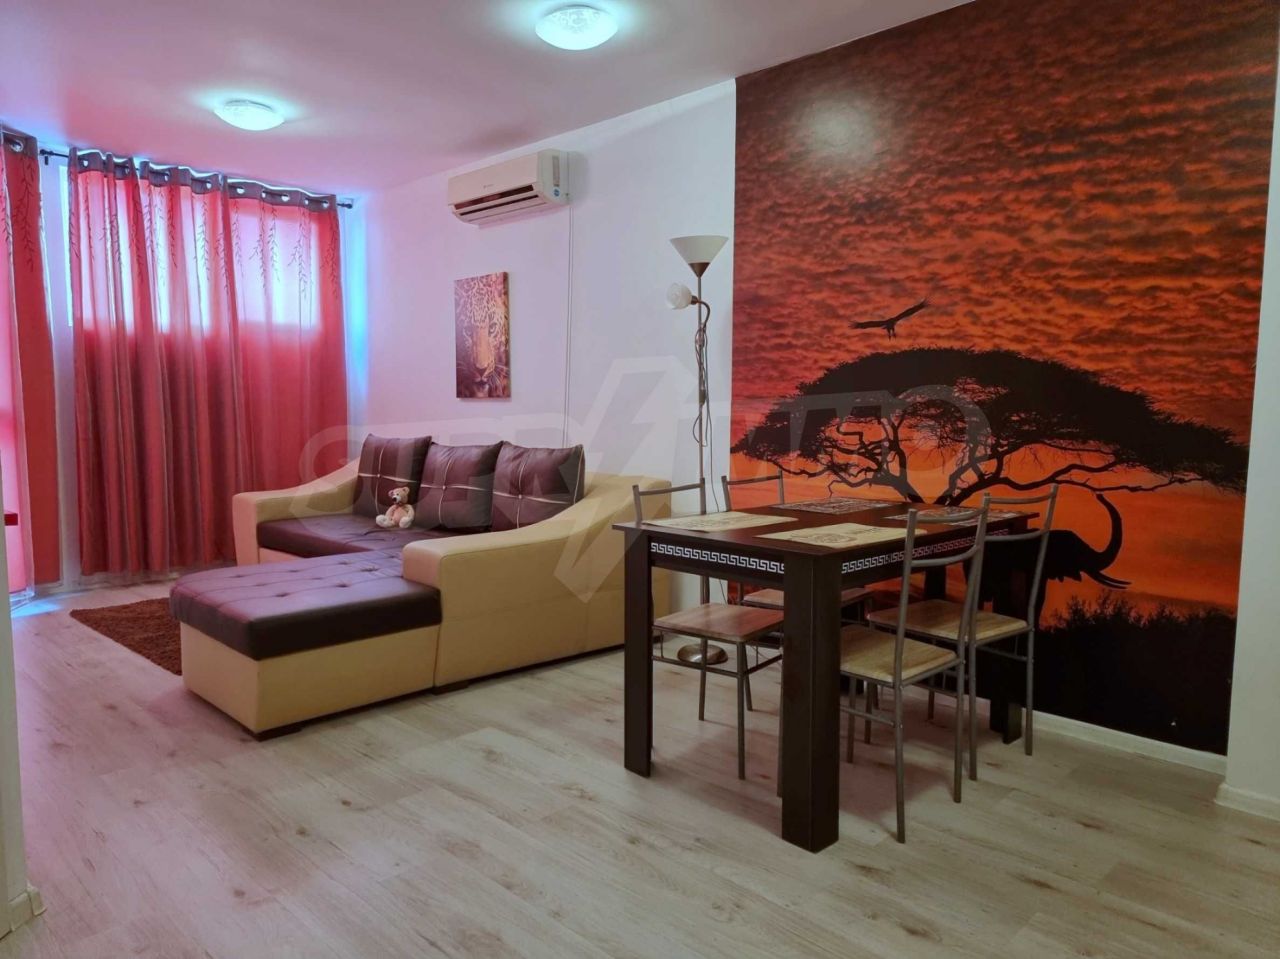 Apartment in Balchik, Bulgaria, 59.04 sq.m - picture 1